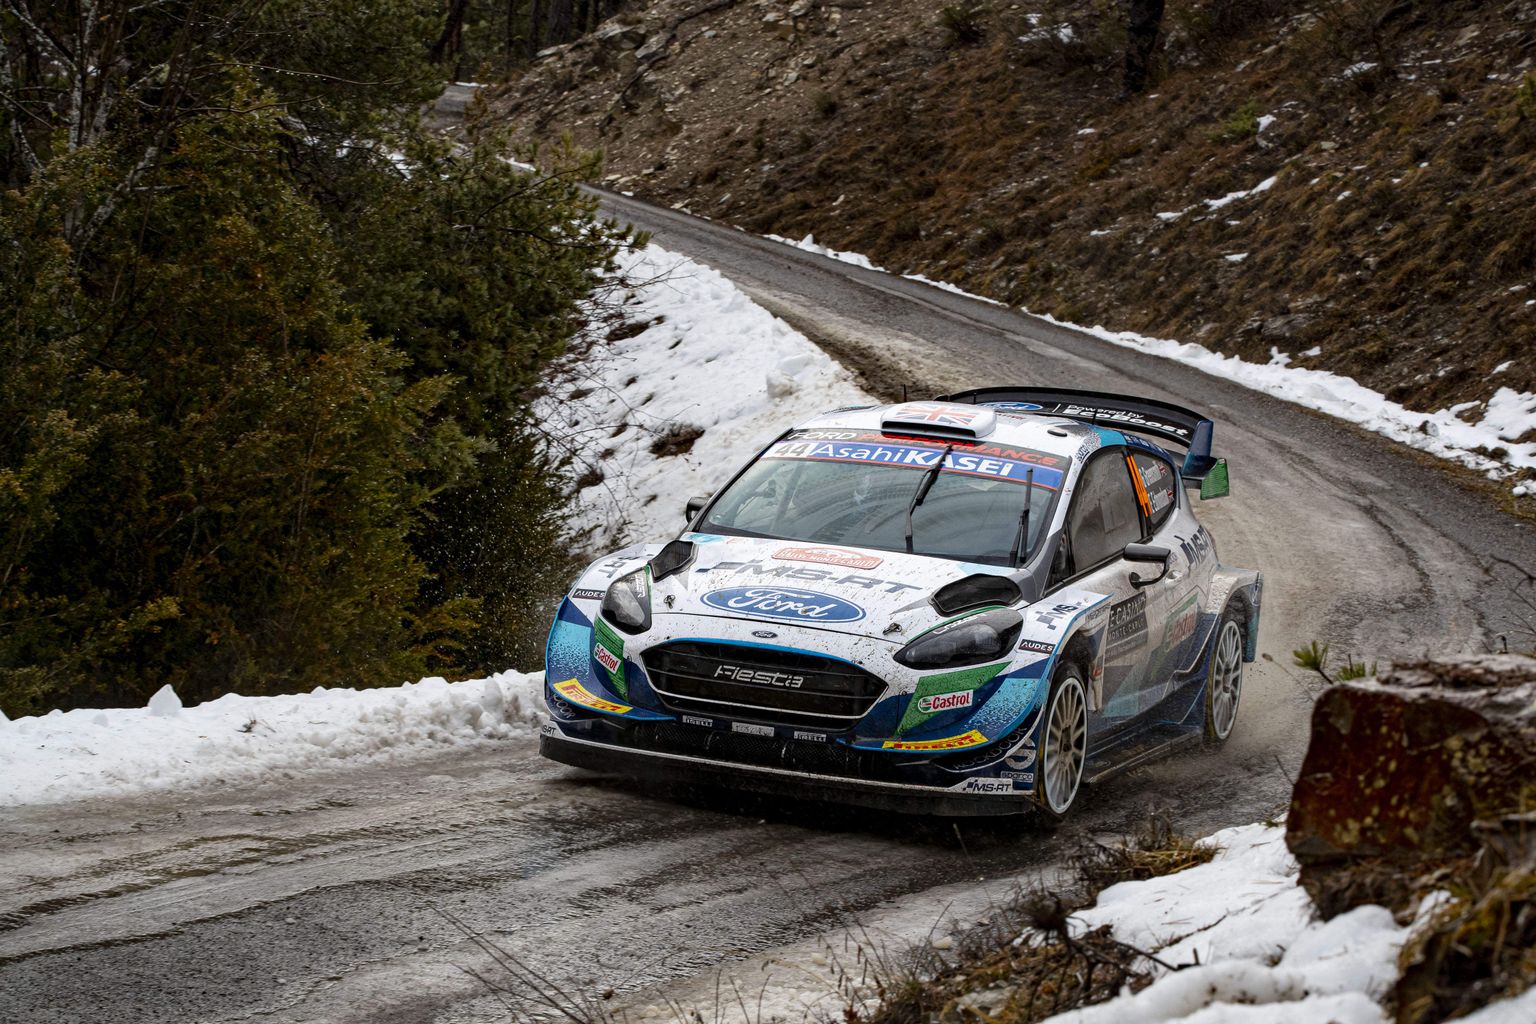 Pildil olev Ford Fiesta WRC on järgmisest aastast minevik.